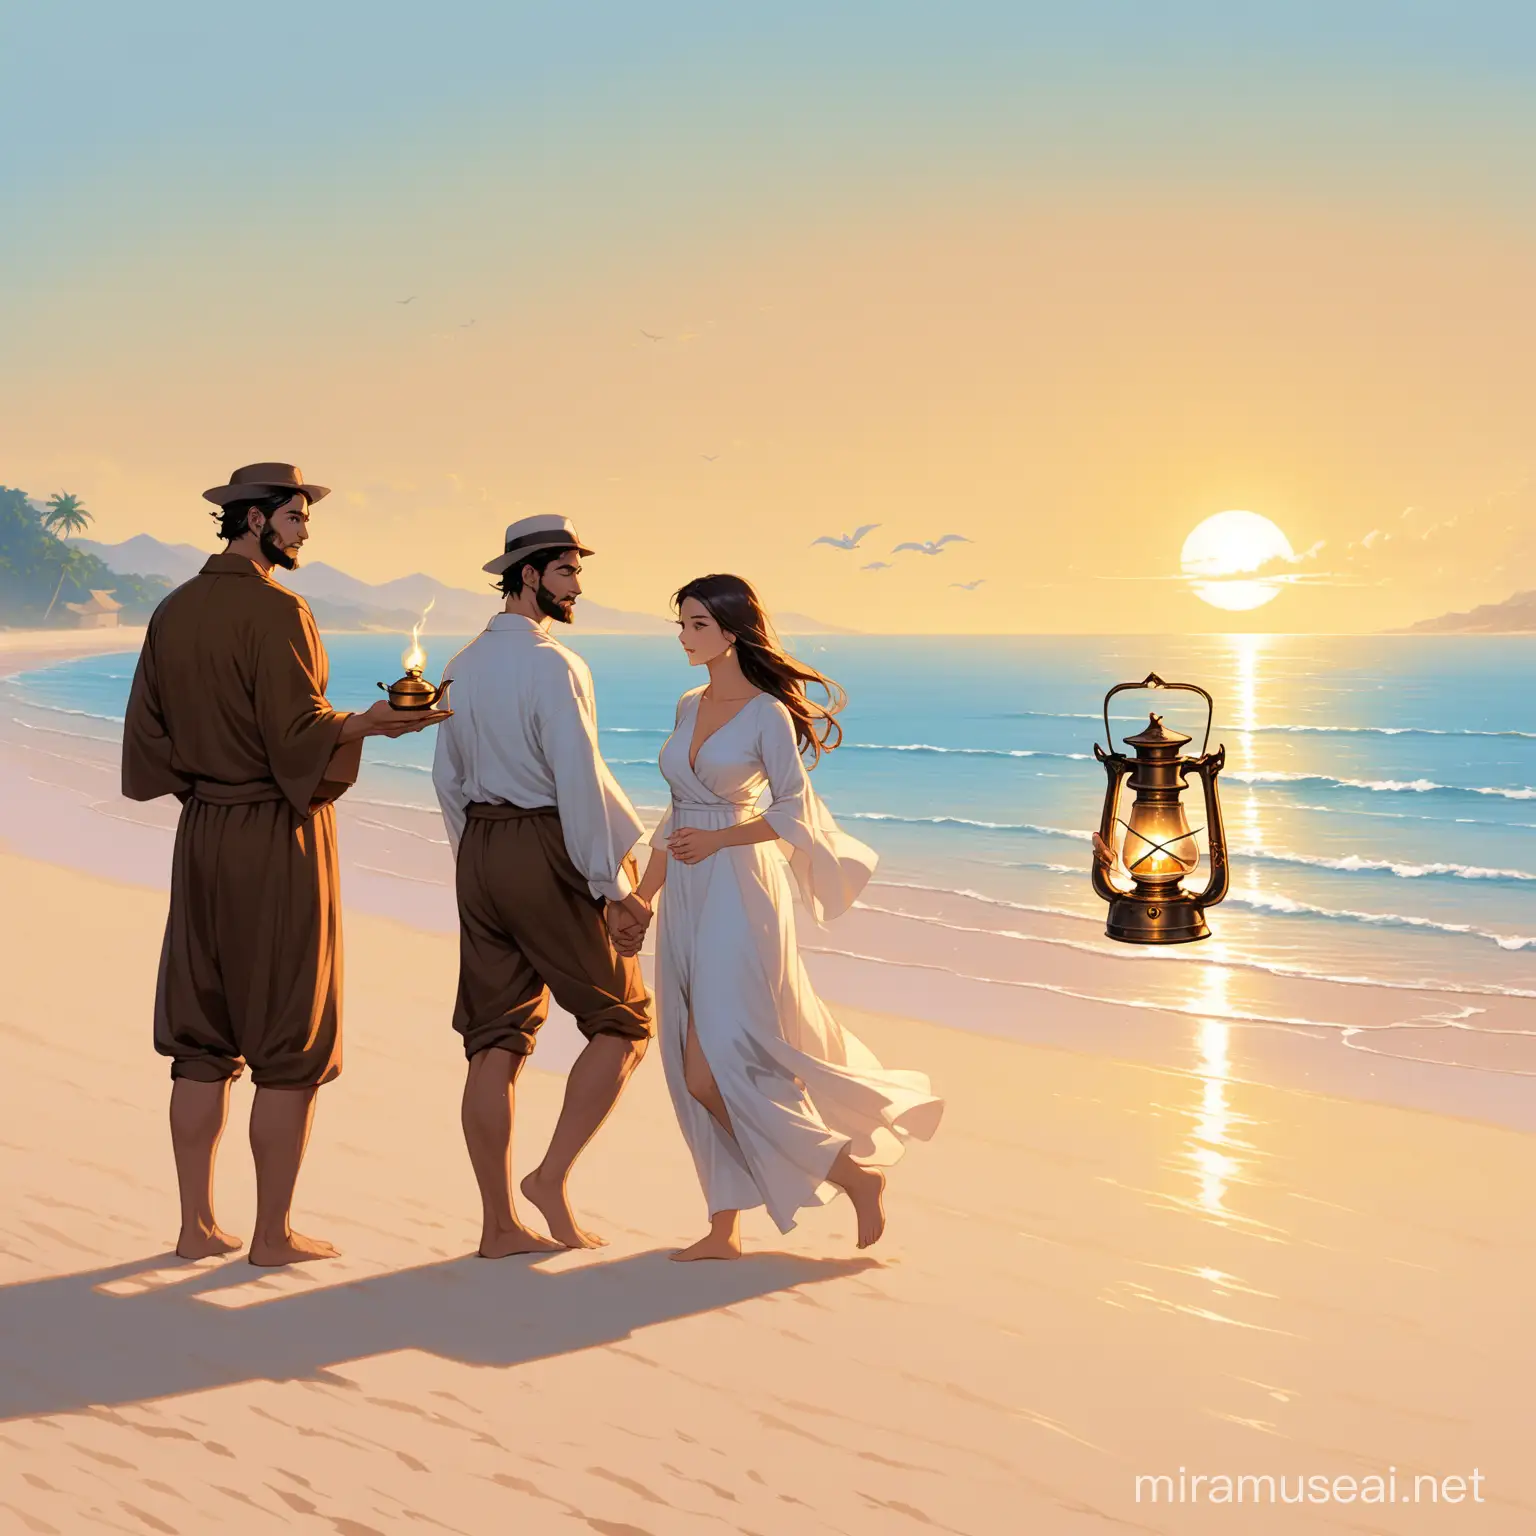 Kaksi miestä ja nainen rannalla, sekä ikivanhan öljylampun henki!